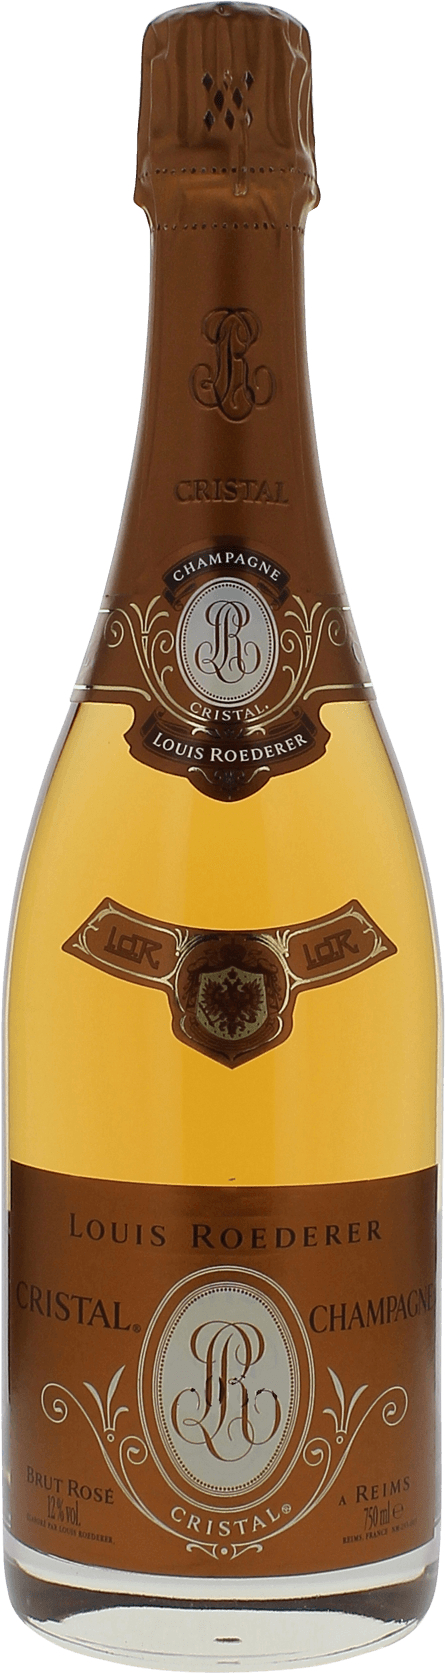 Cristal roederer ros 2002  Roederer, Champagne